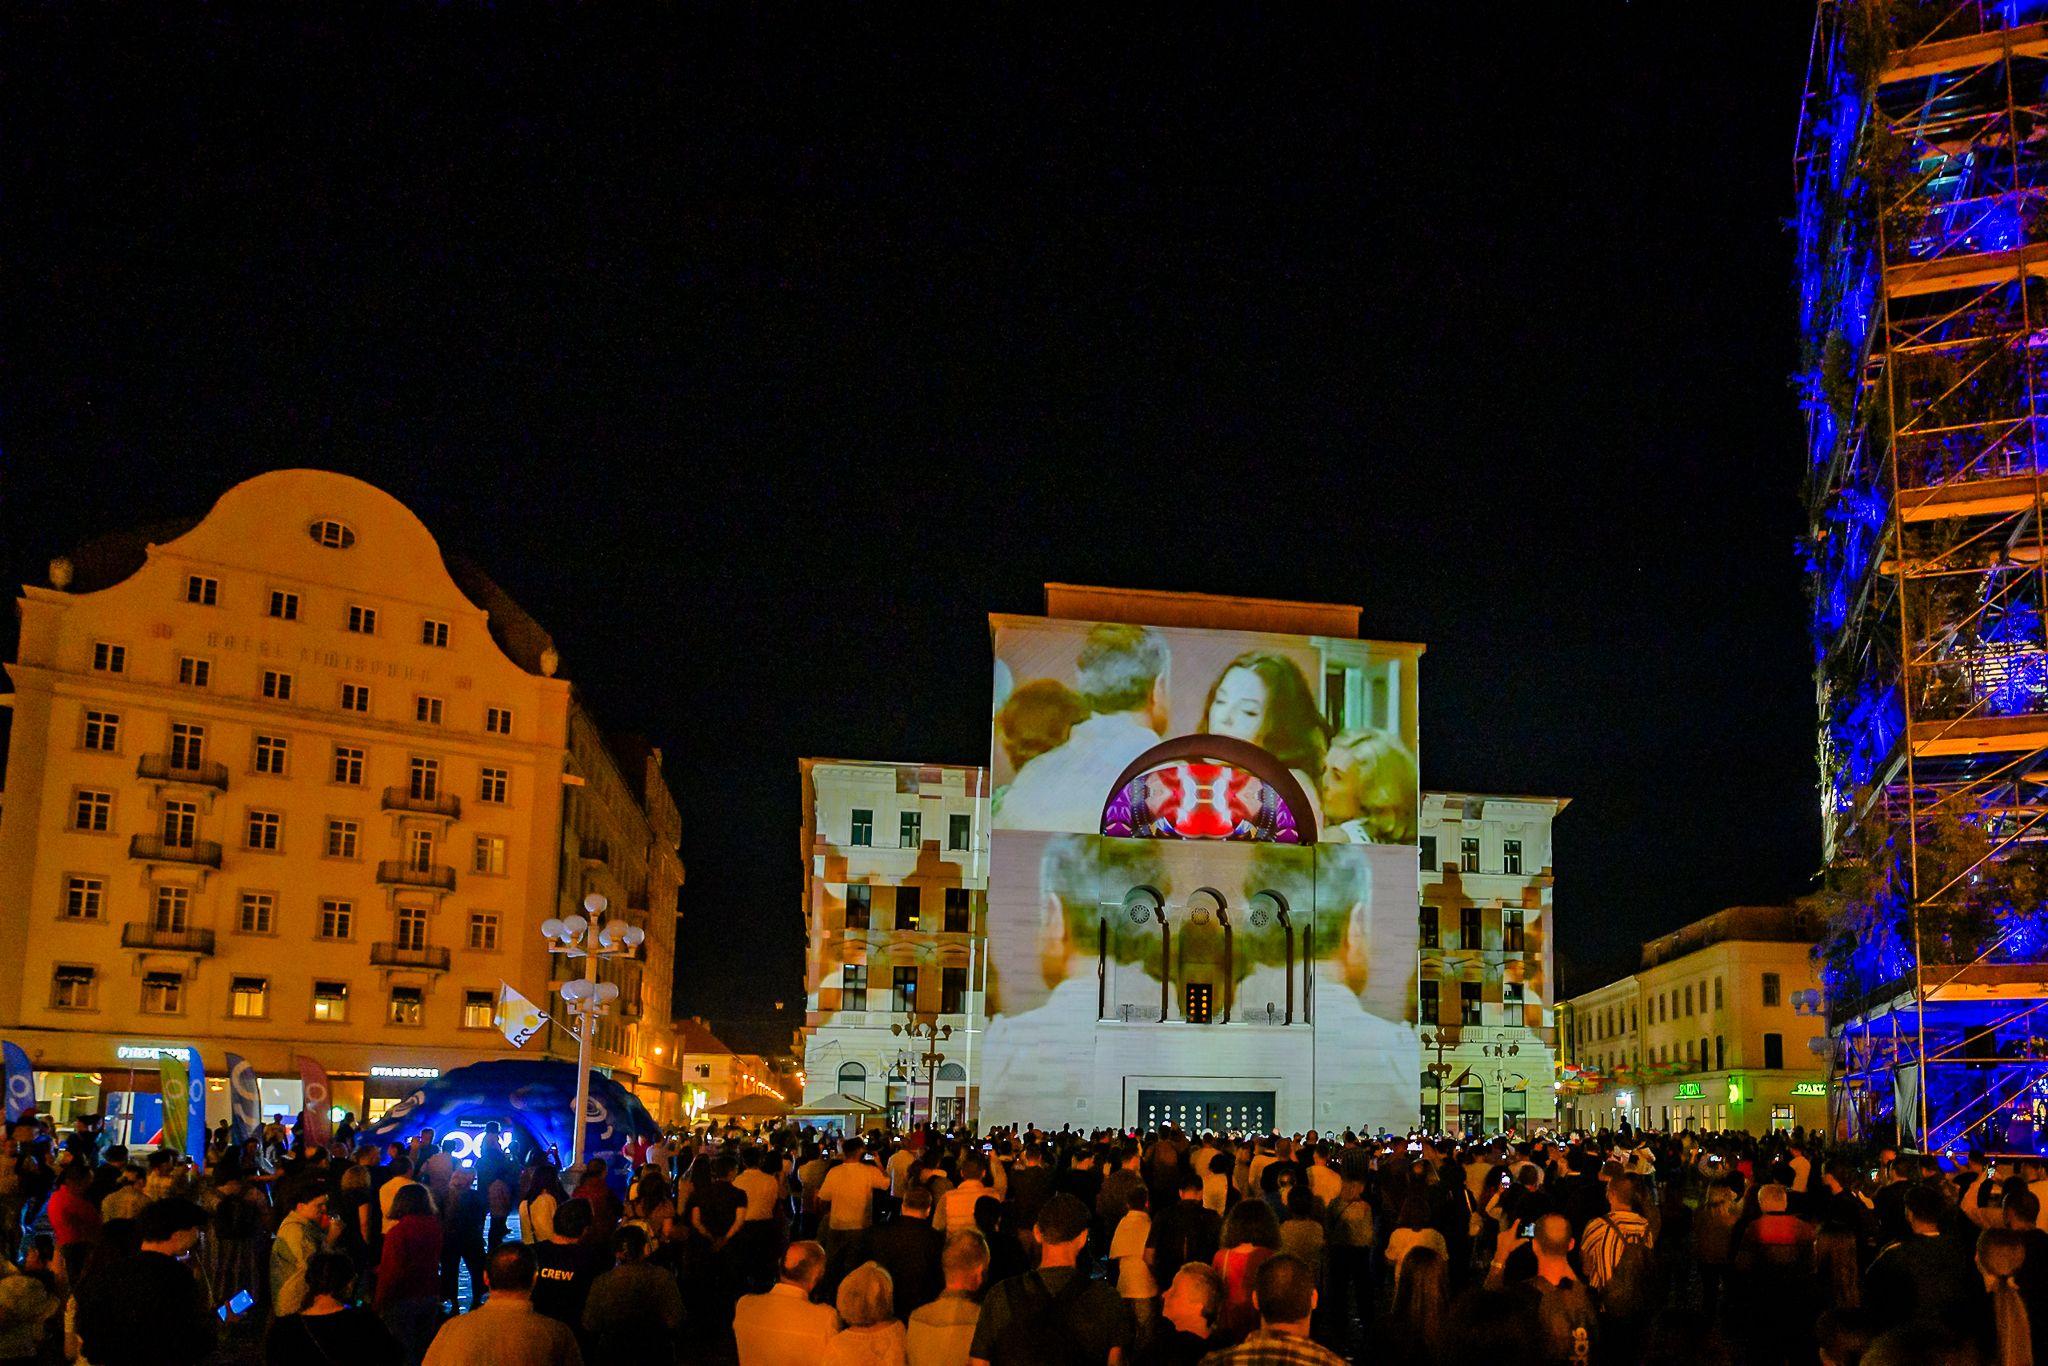 Deschiderea oficiala a evenimentului, din Piața Victoriei, cu un live show susținut de DJ K-lu &amp; Aural Eye - video mapping pe clădirea Operei. 